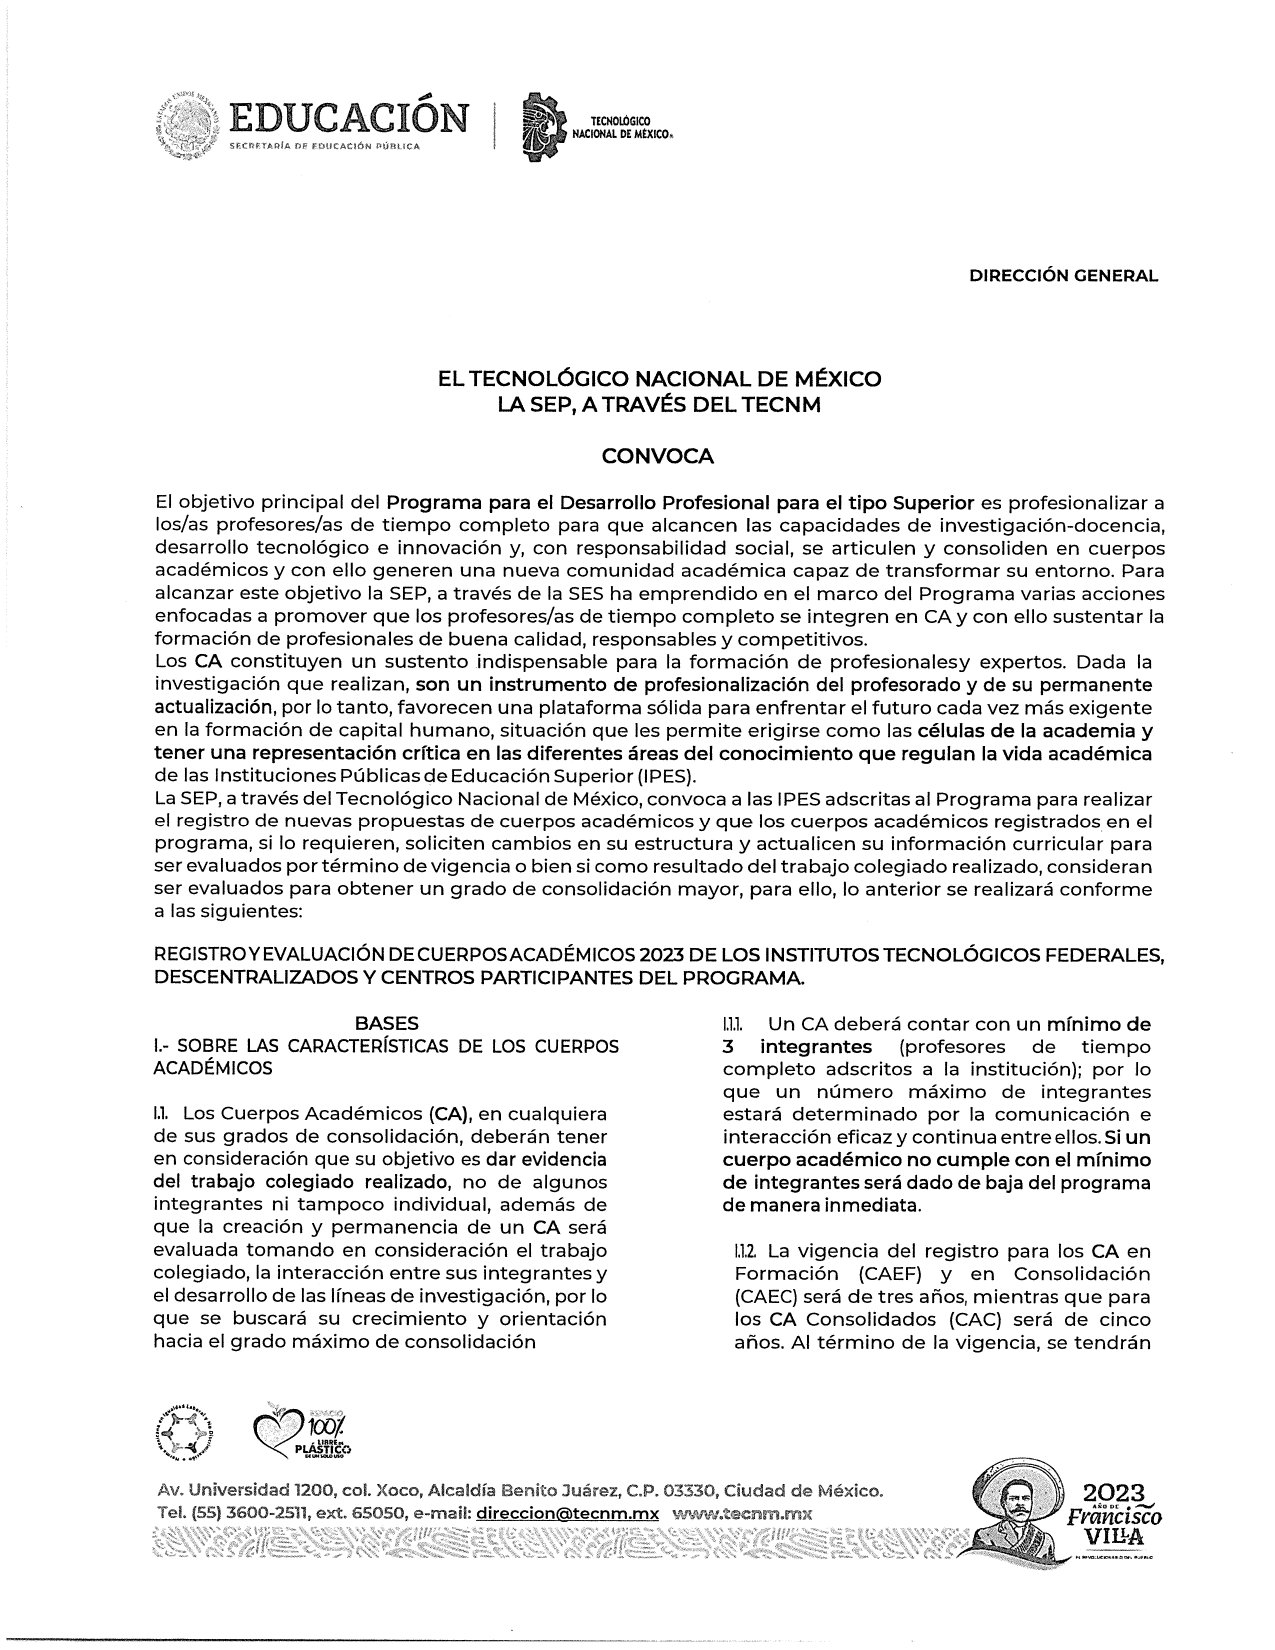 Registro_y_Evaluación_de_Cuerpos_Académicos_2023_page-0001.jpg